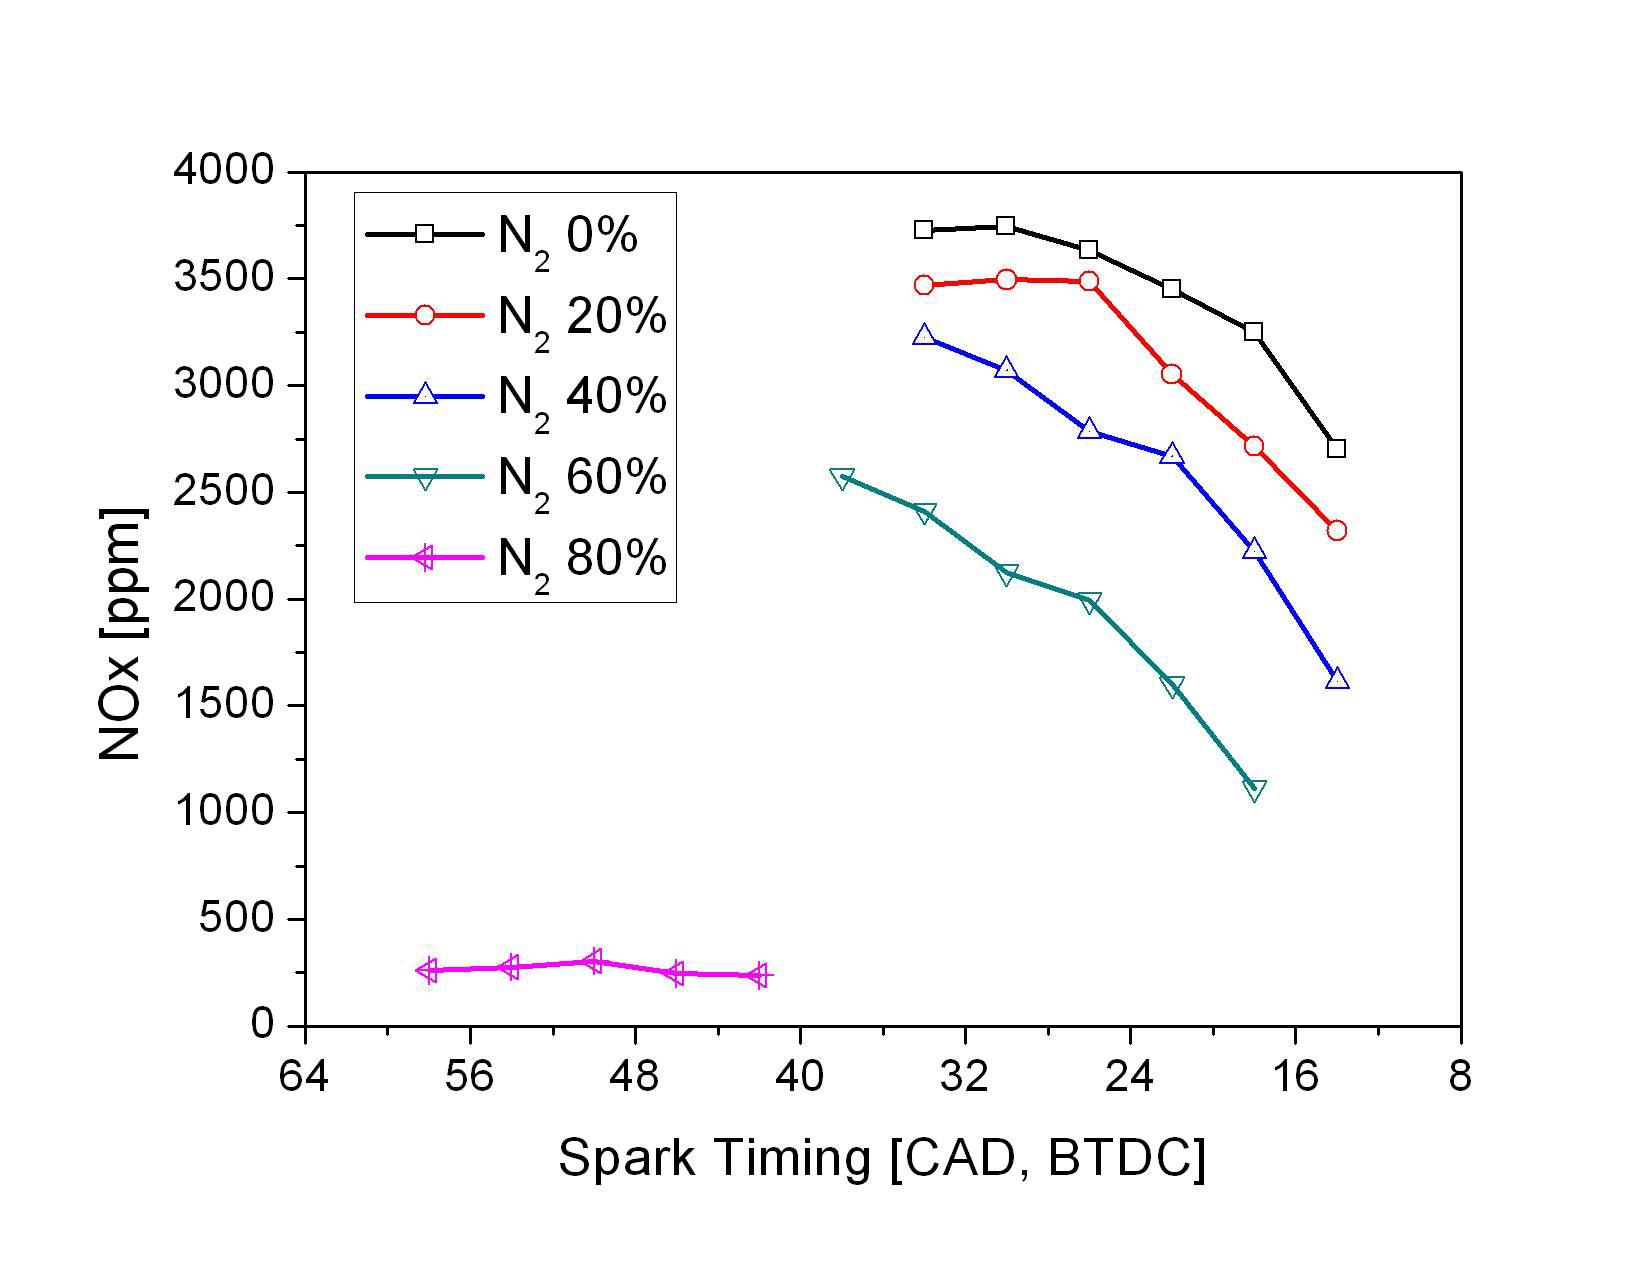 질소 희석비(발열량) 변화에 따른 NOx 배출량 변화 (spark timing sweep)